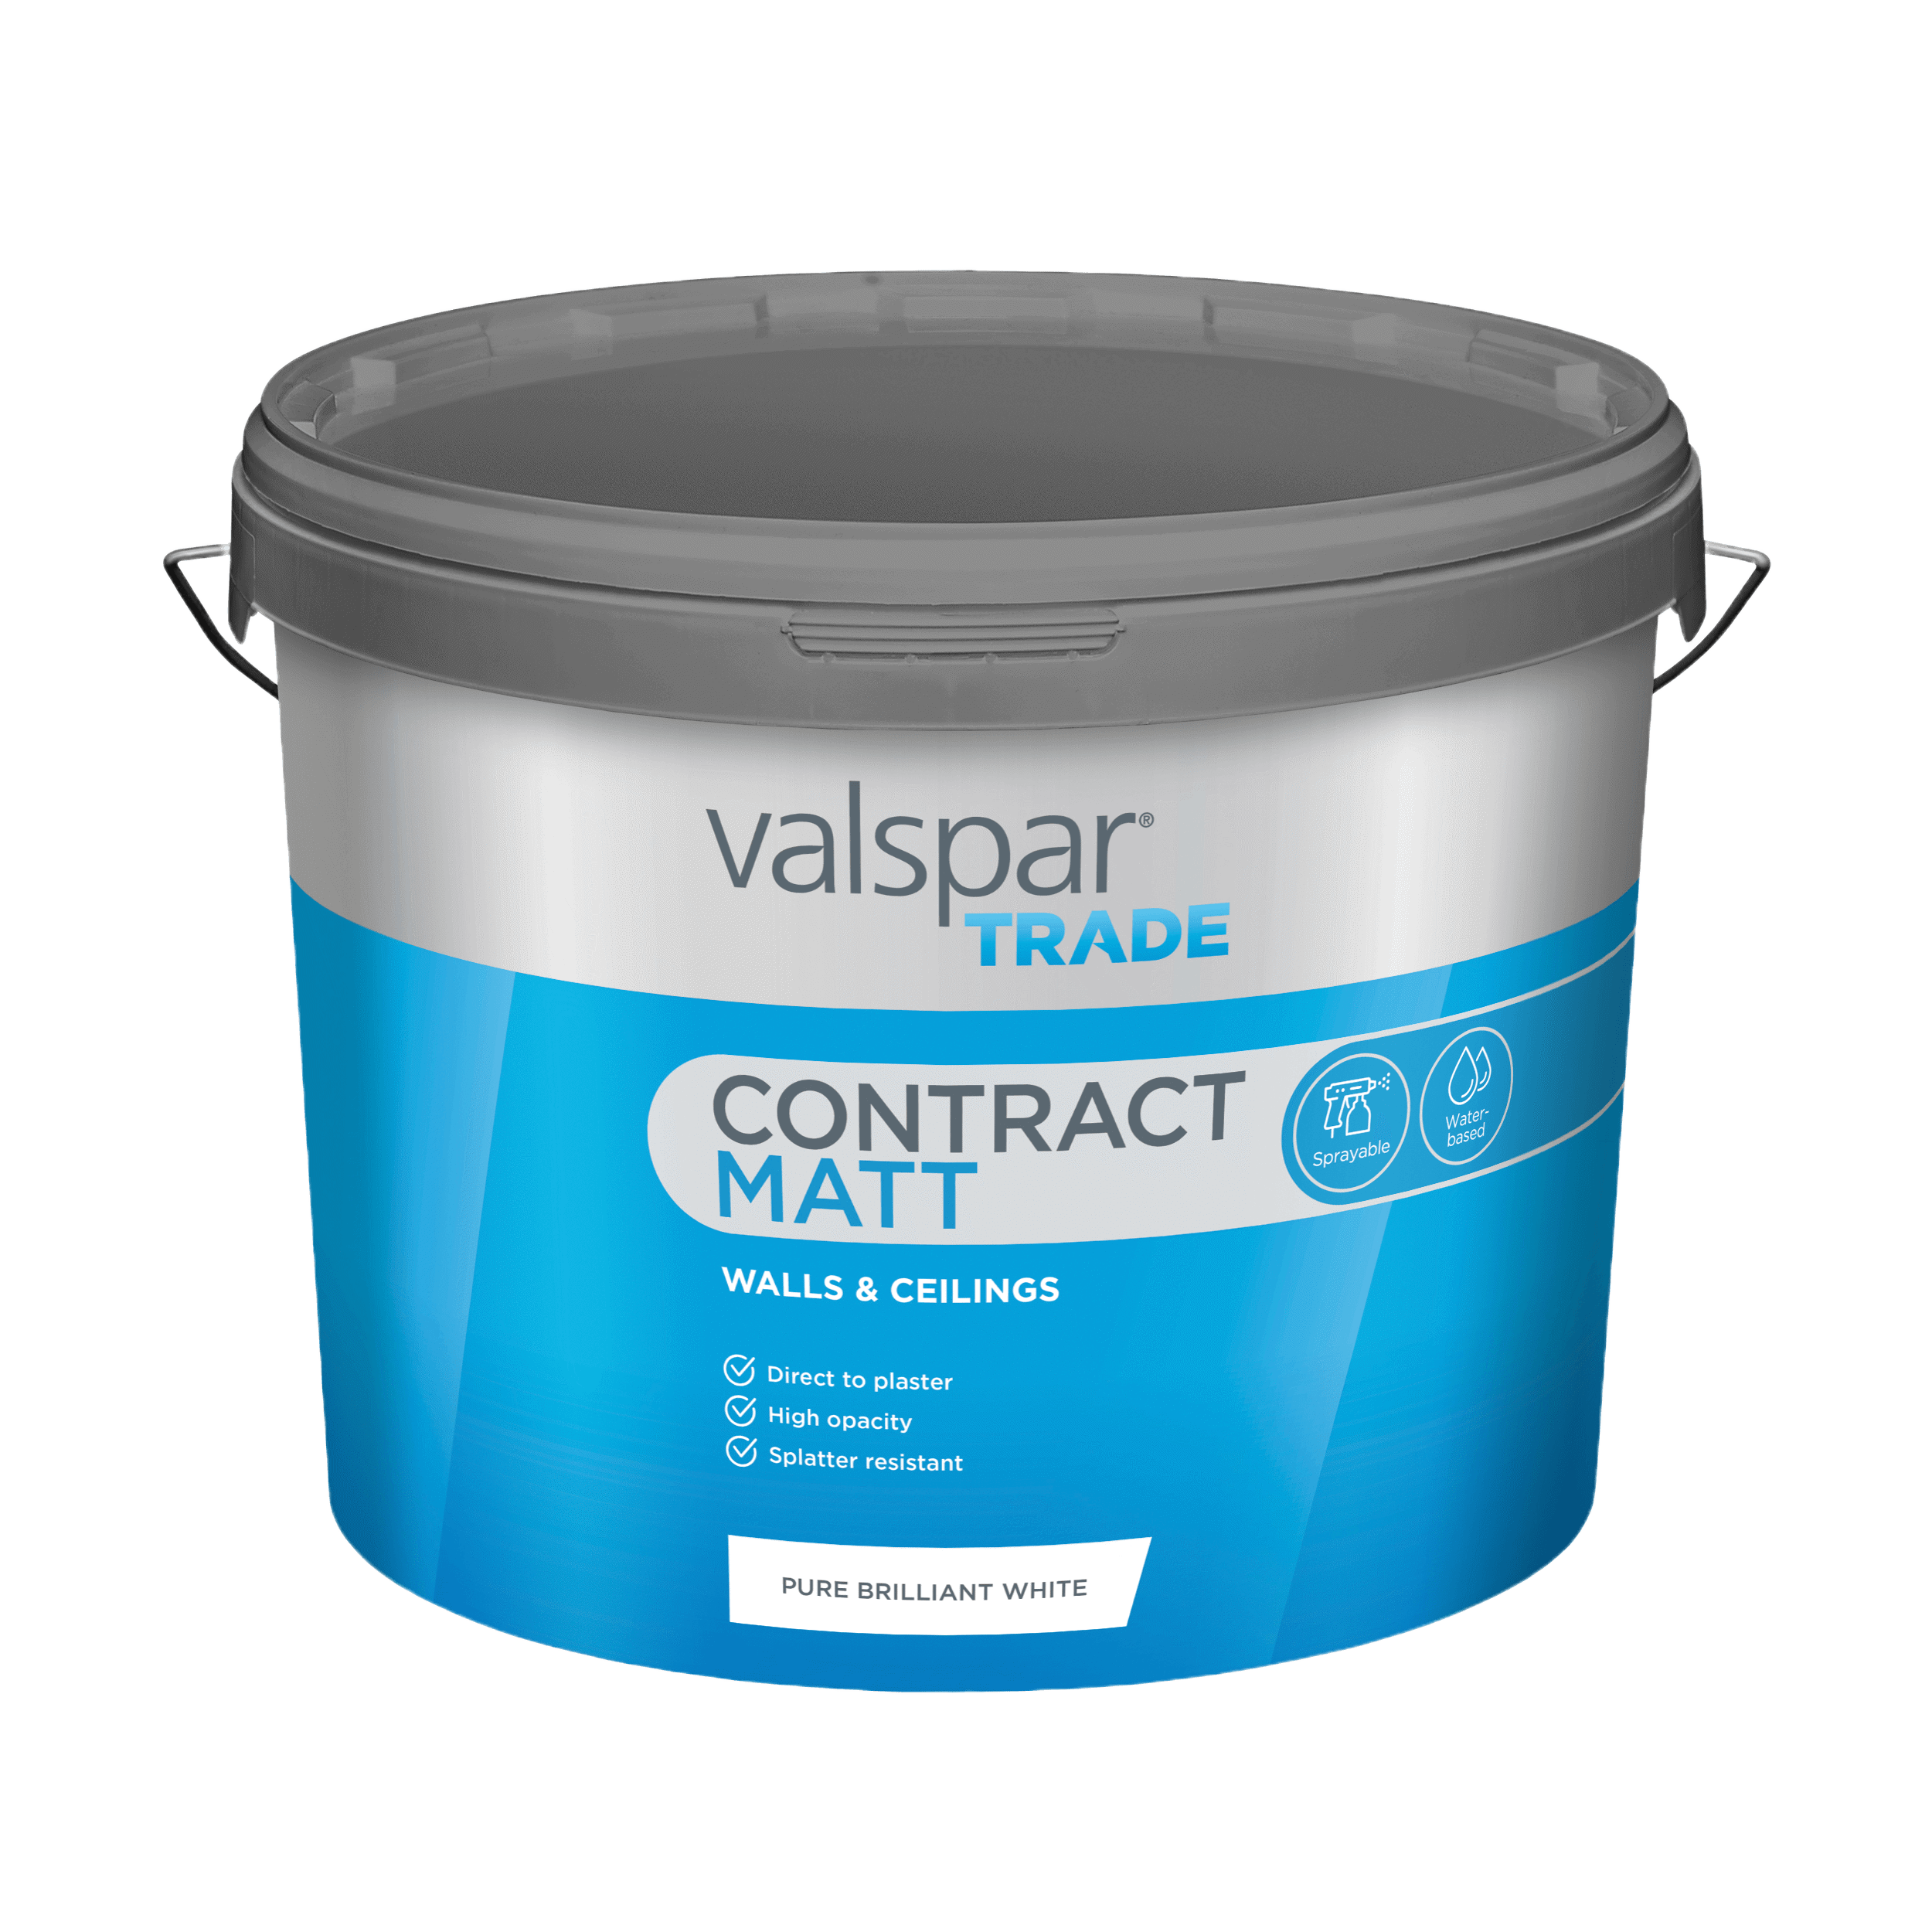 Valspar® Trade Contract Matt